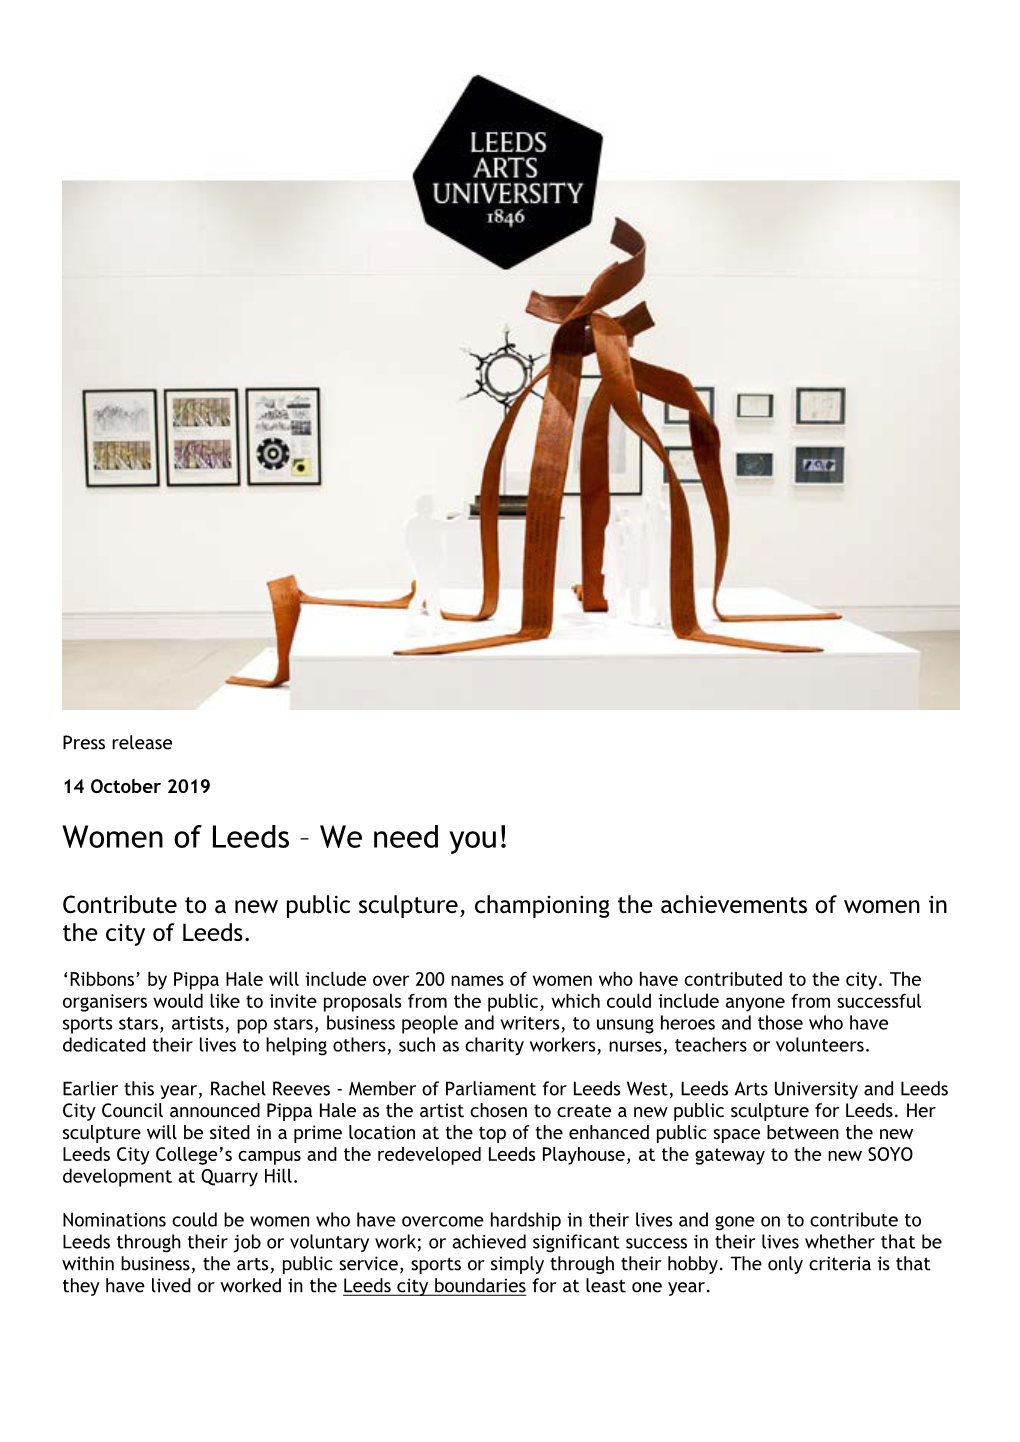 Women of Leeds – We Need You!